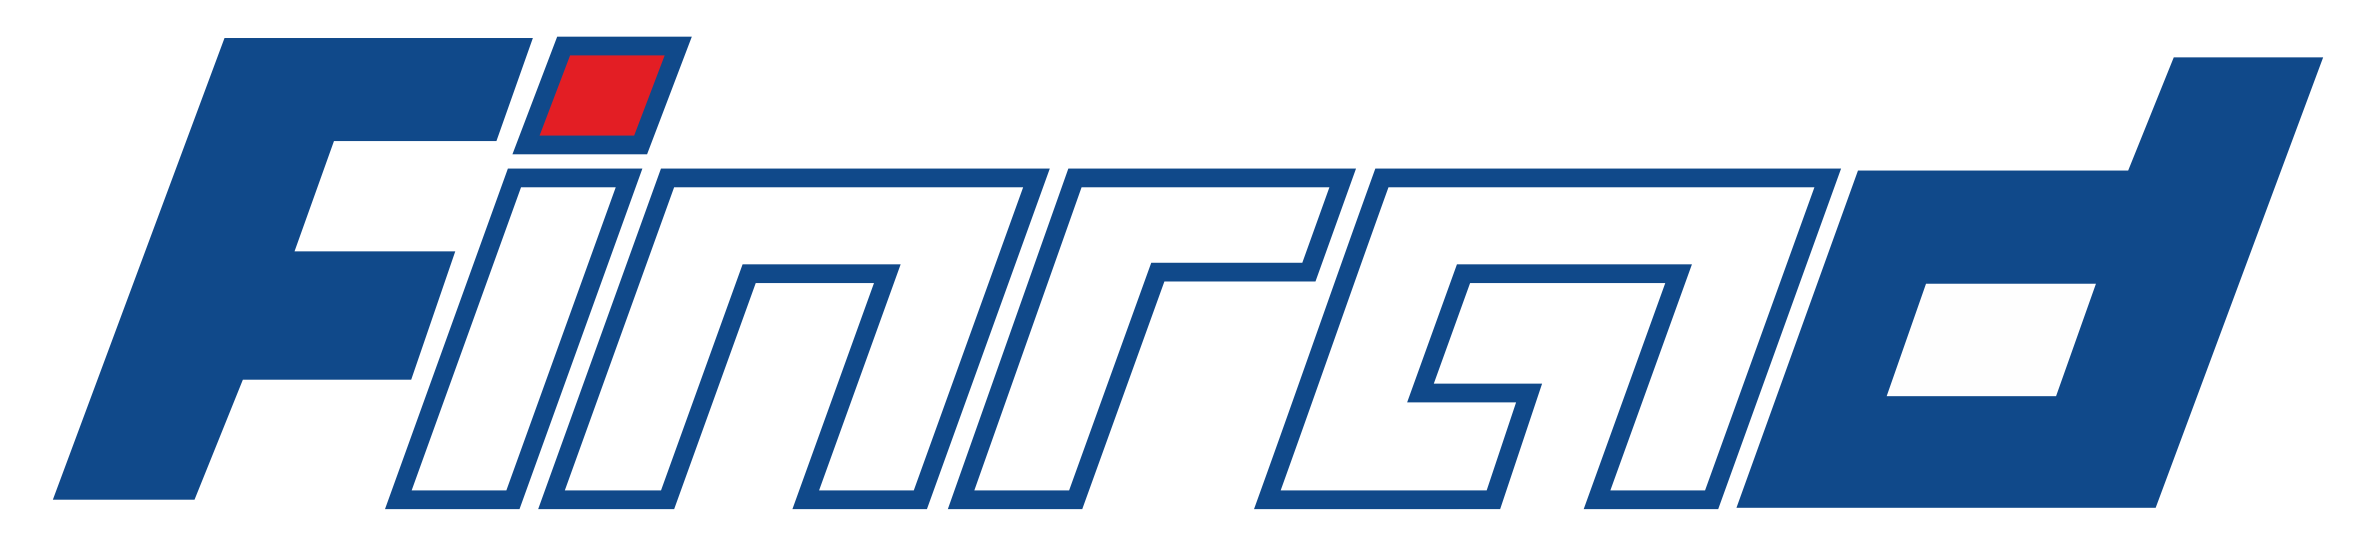 Našicecement logo